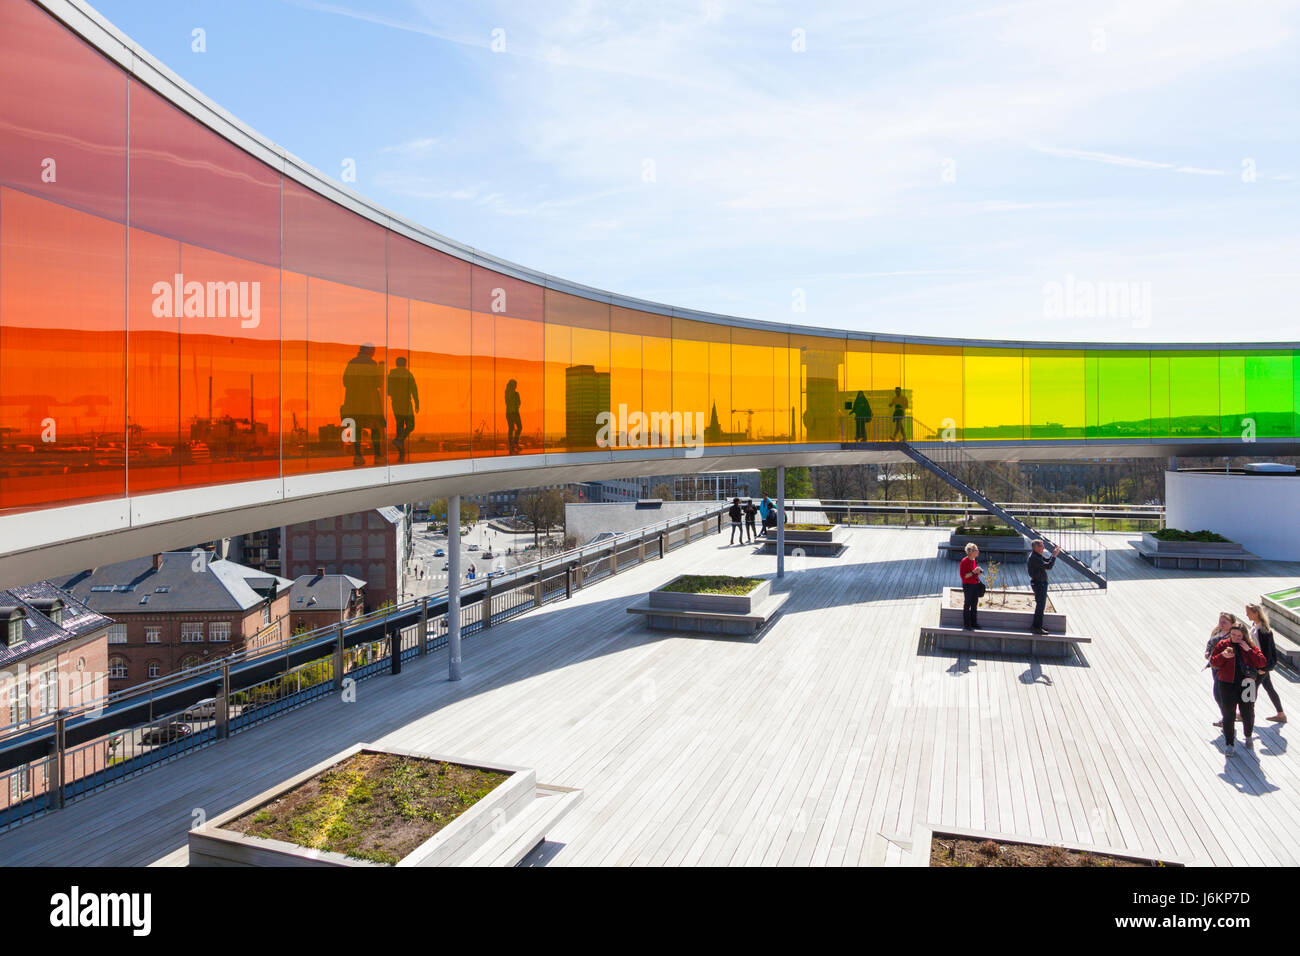 Les visiteurs du musée à l'intérieur et au-dessous de l'installation par Olafur Eliasson sur toit de musée ARoS à Aarhus, Danemark Banque D'Images